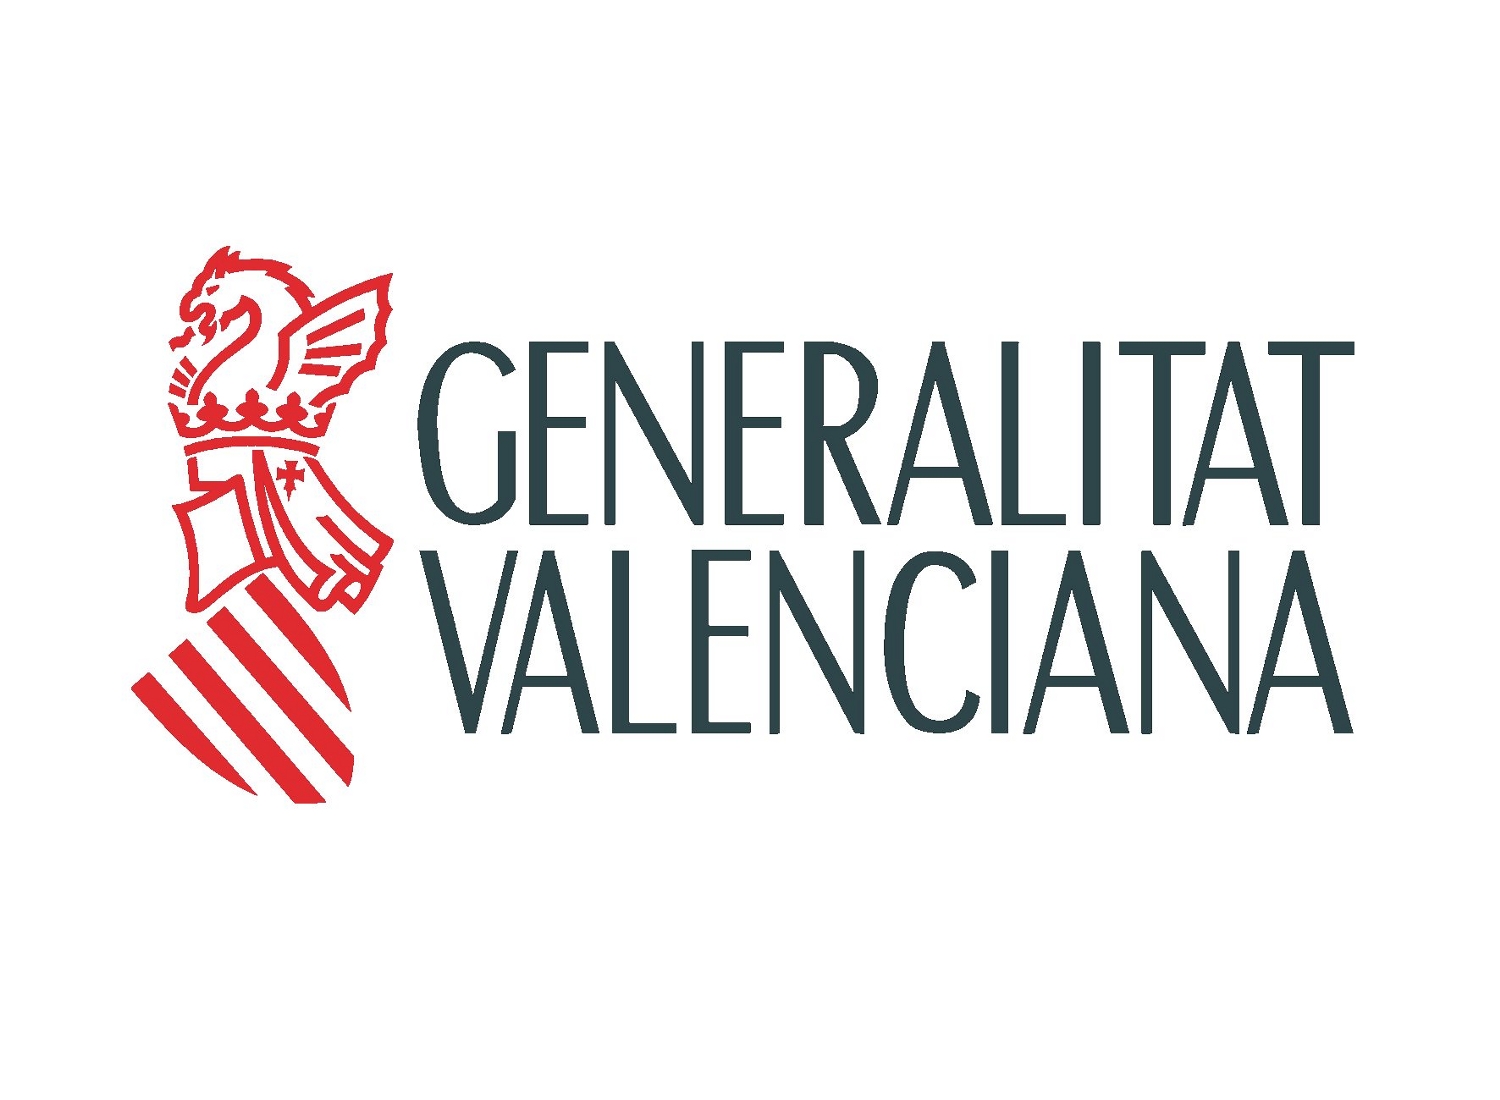 Propuesta de Oferta de Empleo Público de la Generalitat Valenciana (20 plazas de Archivos y Bibliotecas)